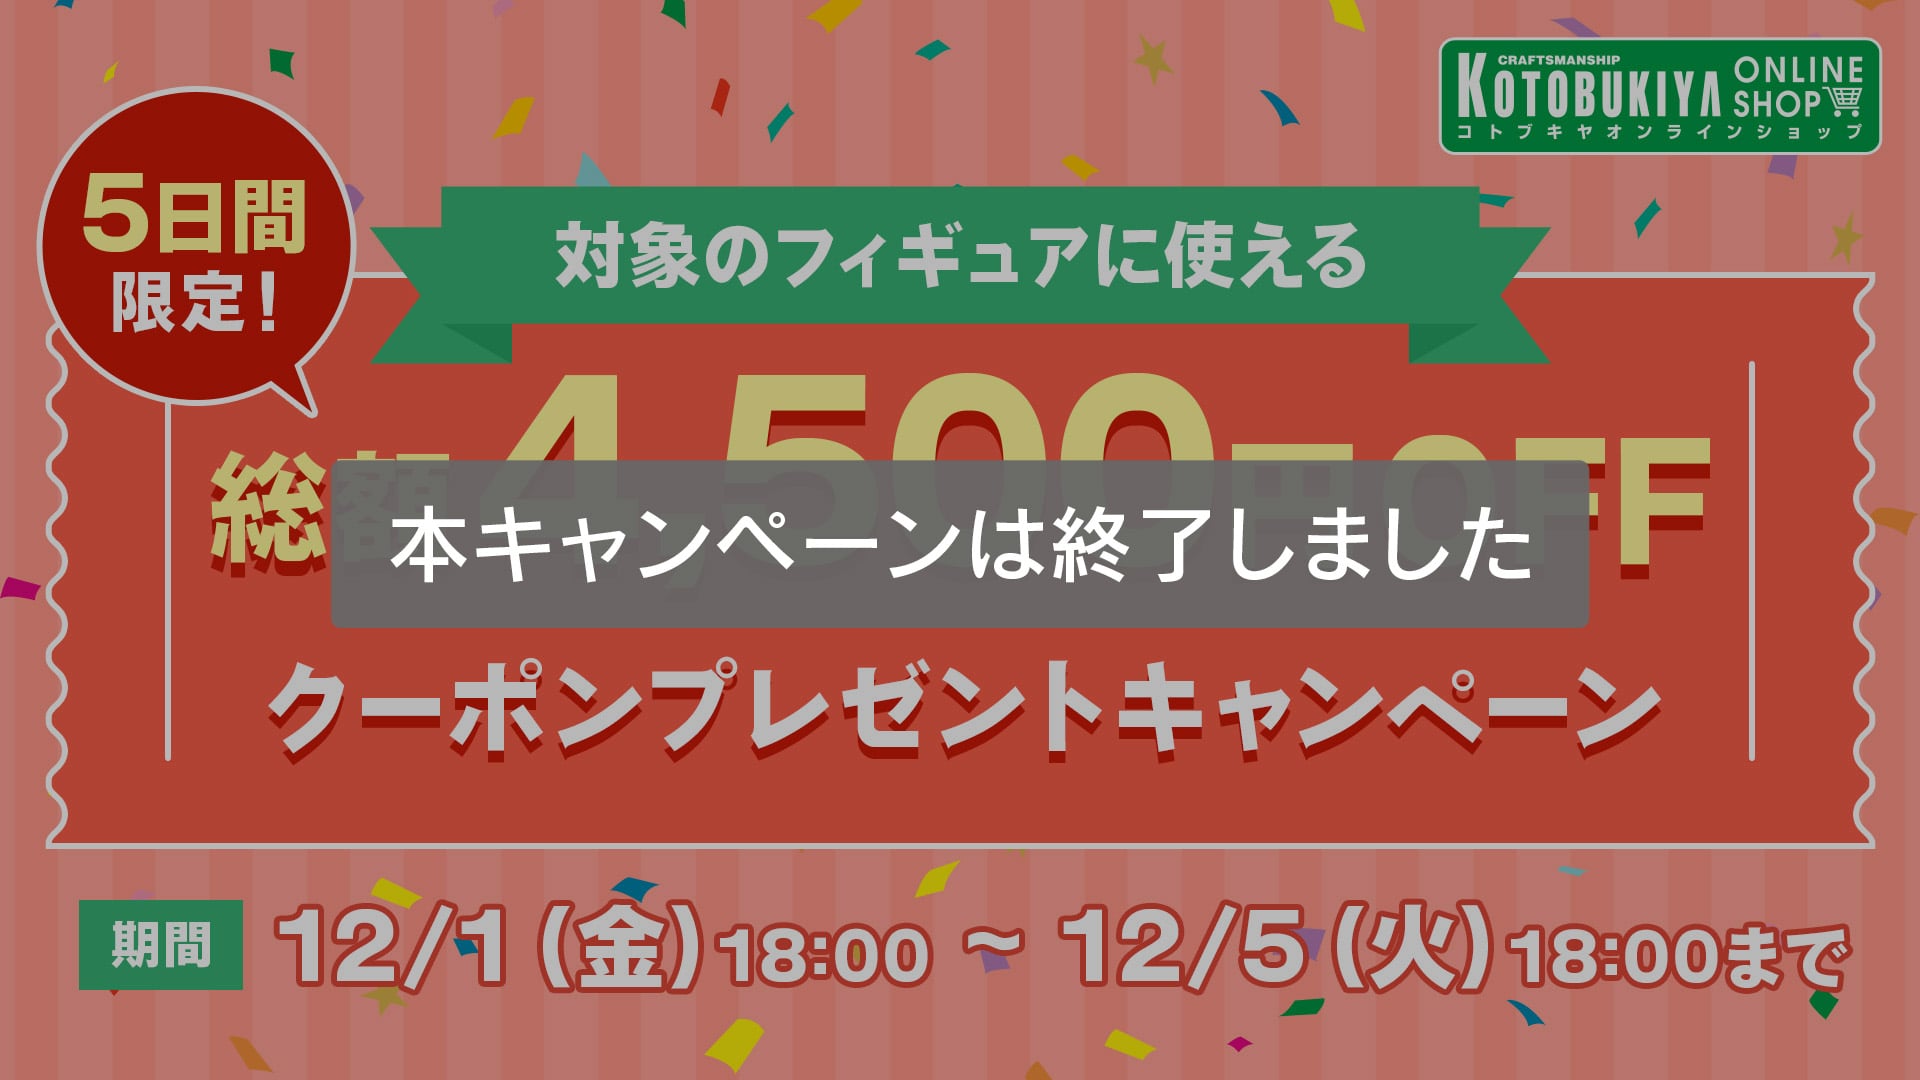 5日間限定 総額4,500円OFFクーポンプレゼントキャンペーン